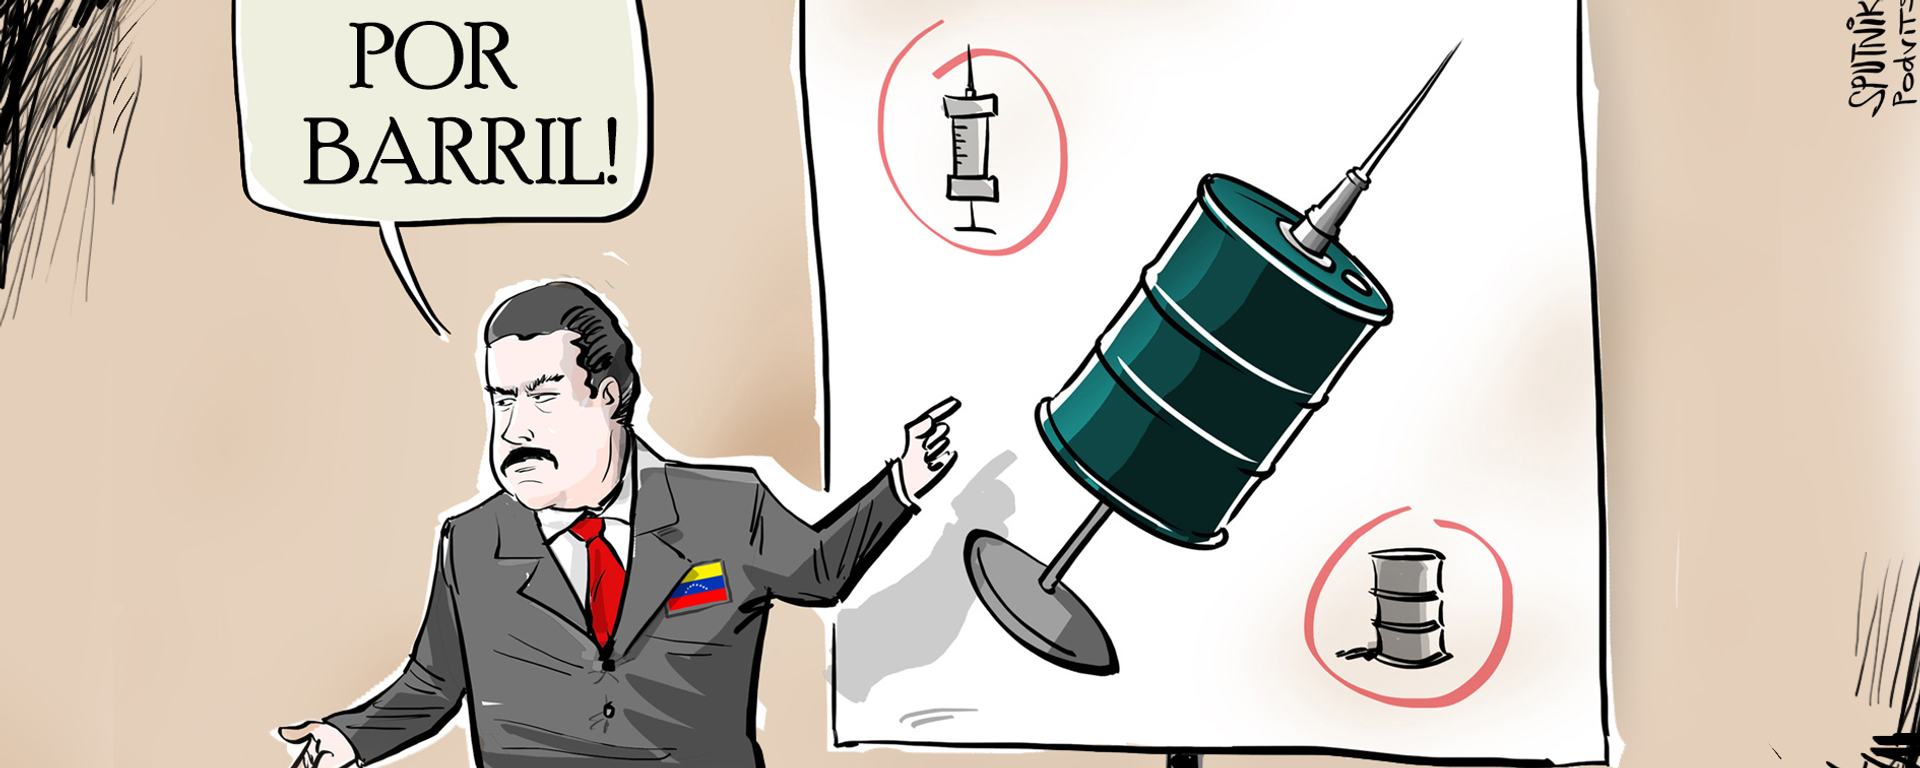 Barril por barril: Venezuela ofrece intercambiar vacunas por petróleo - Sputnik Mundo, 1920, 29.03.2021